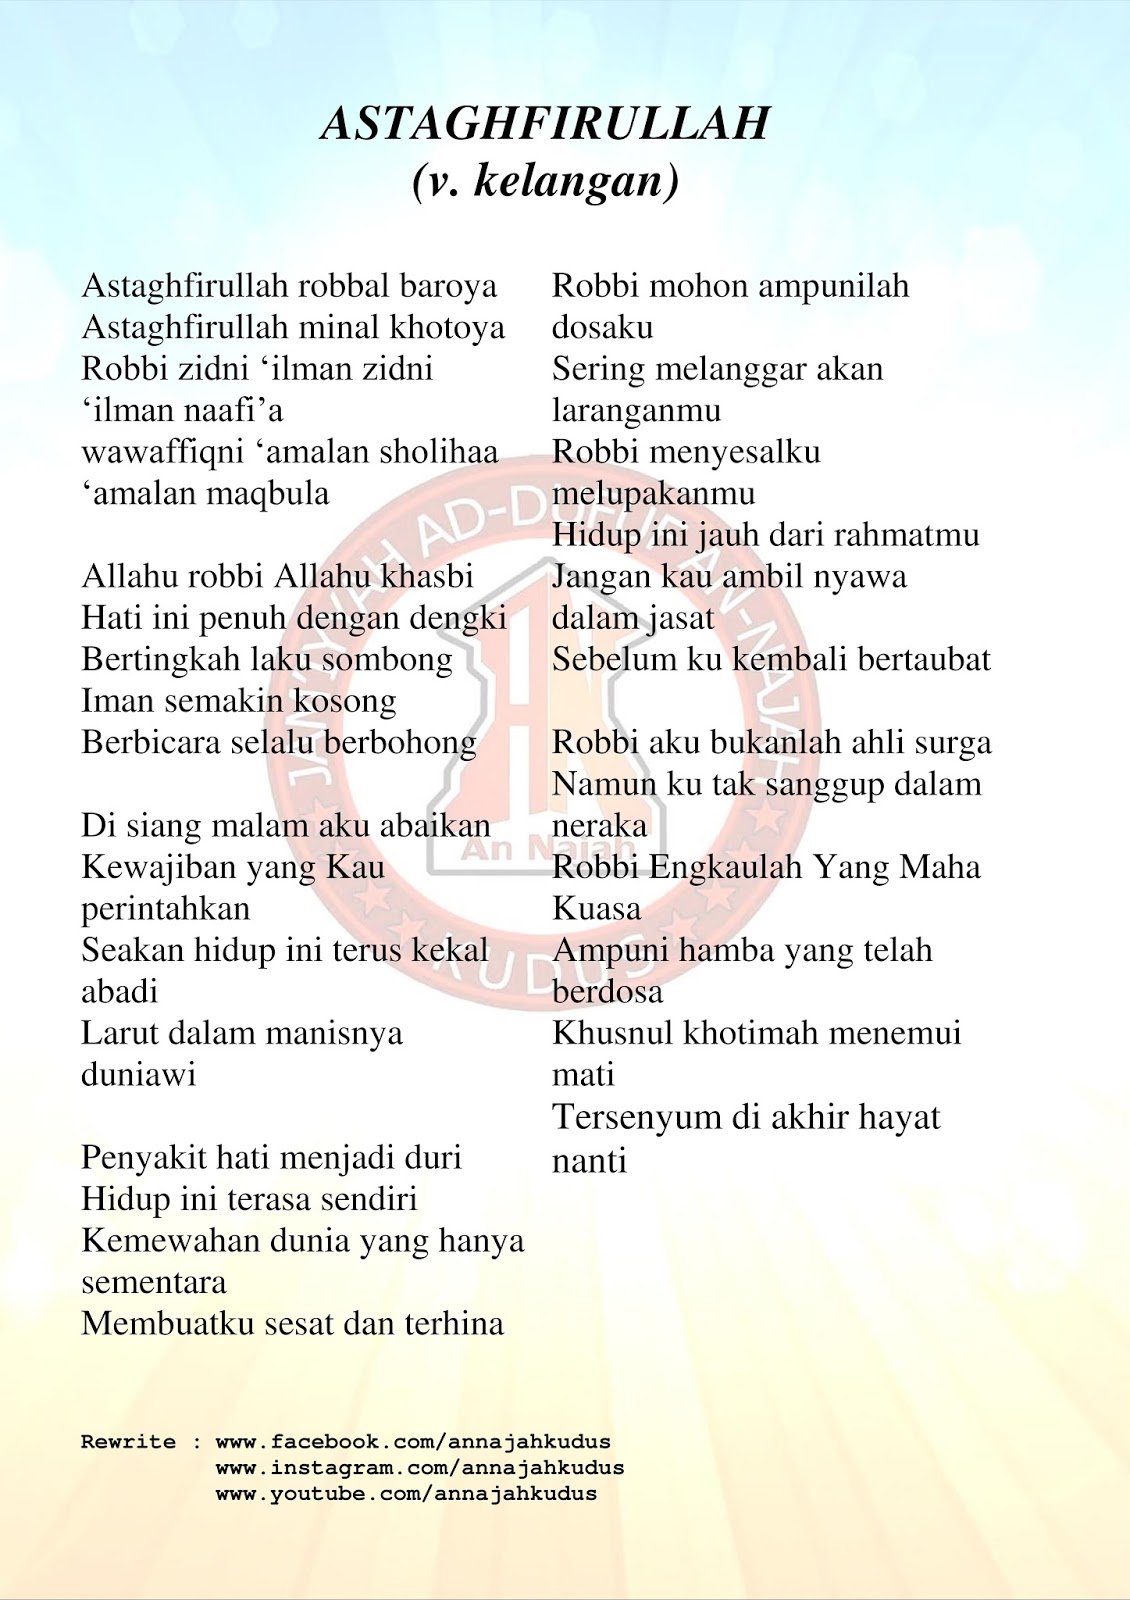 Lirik Lagu Astagfirullah Versi Kelangan Bahasa Jawa